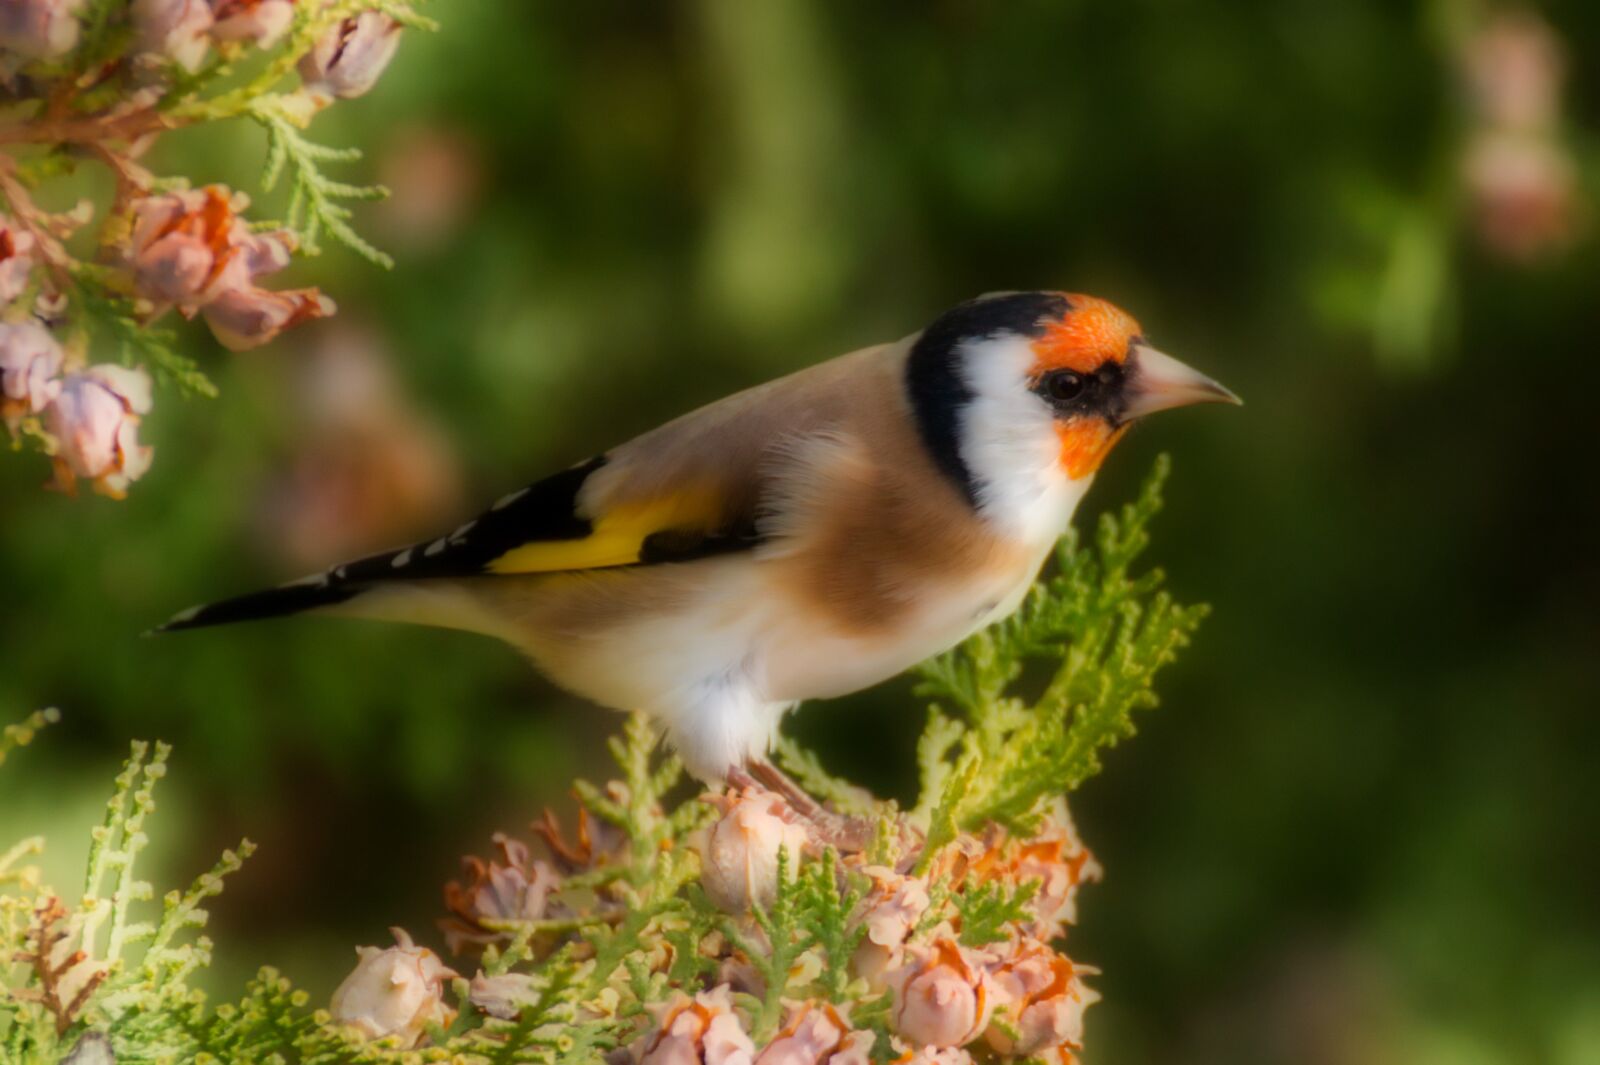 Canon EOS 70D sample photo. European goldfinch, bird, nature photography